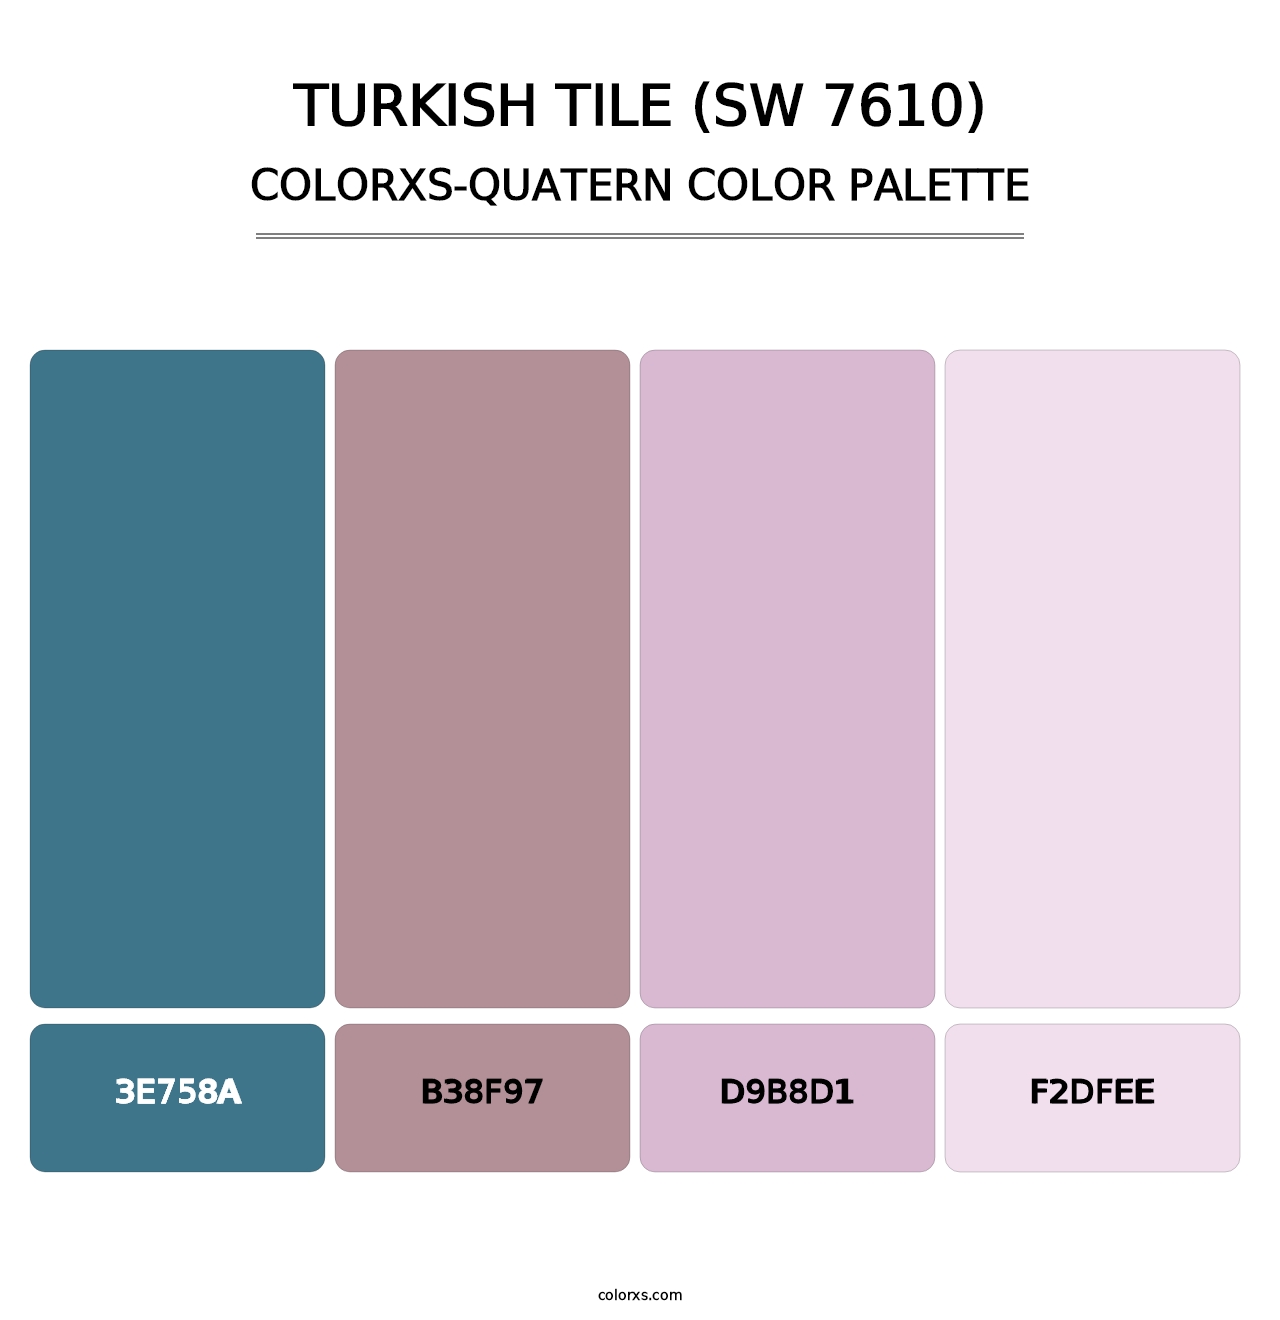 Turkish Tile (SW 7610) - Colorxs Quatern Palette